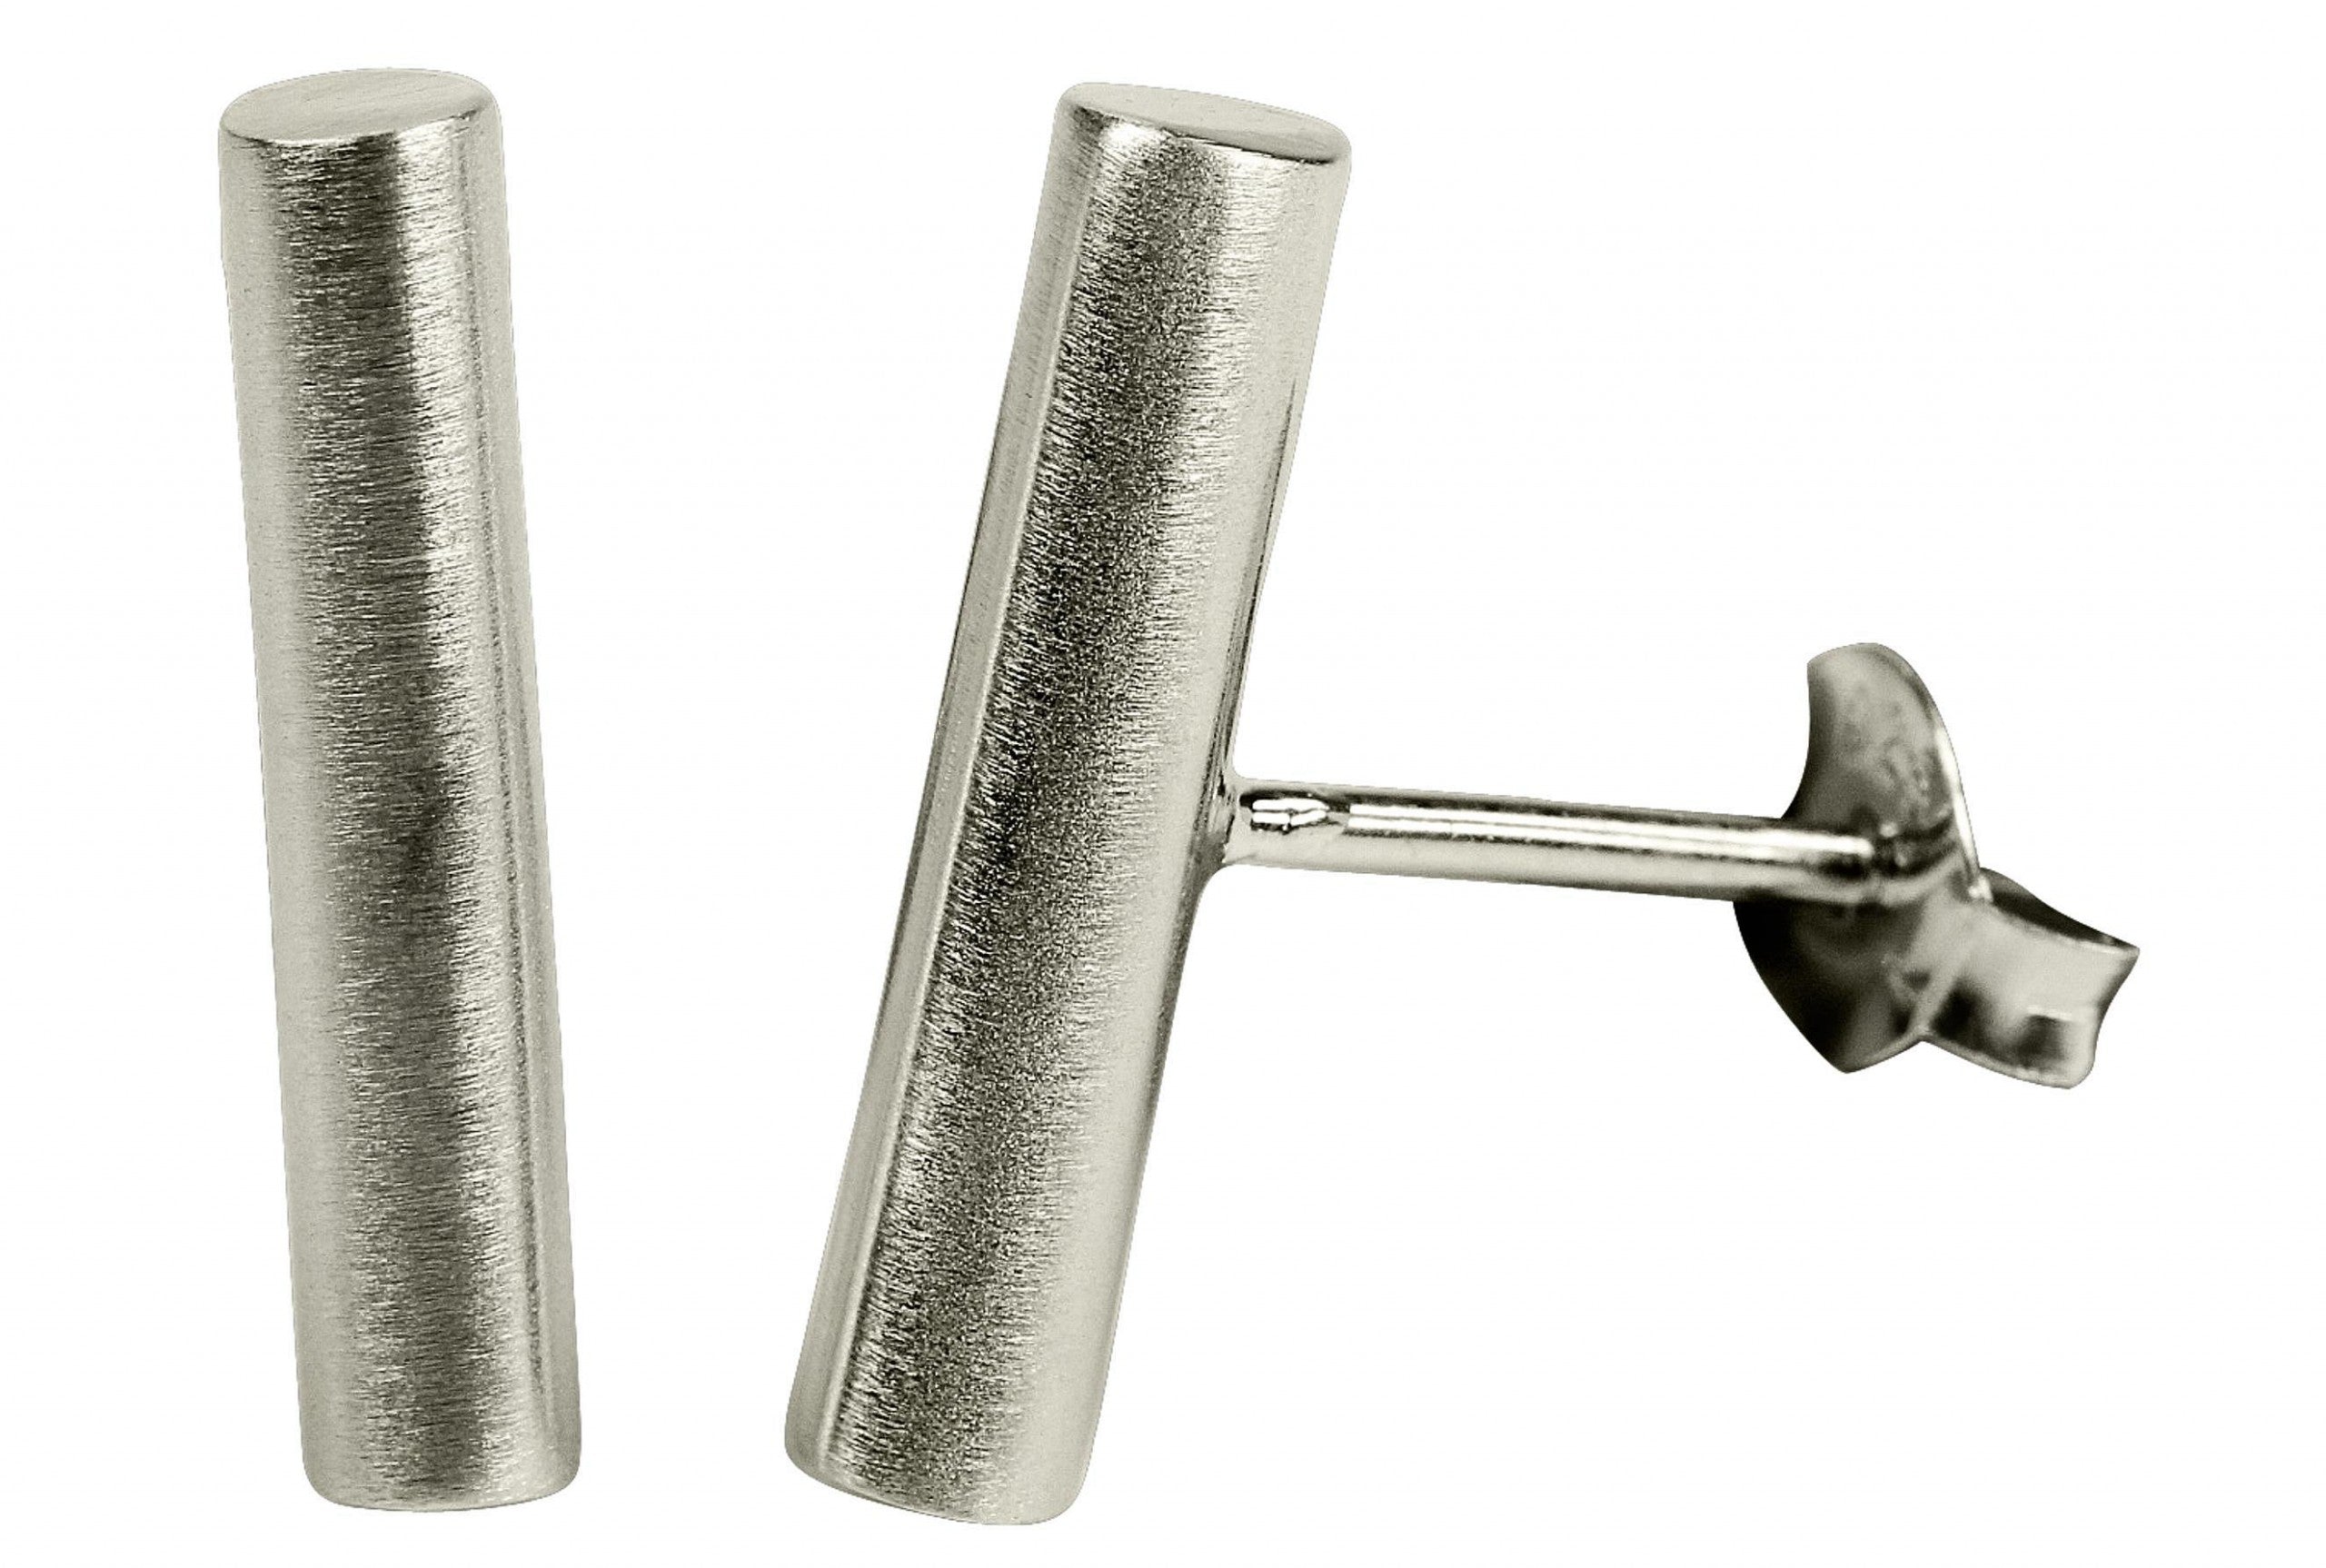 Ohrstecker für Damen aus Silber in Gestalt eines zylindrisch geformten Stäbchens mit einer mattierten Oberfläche.